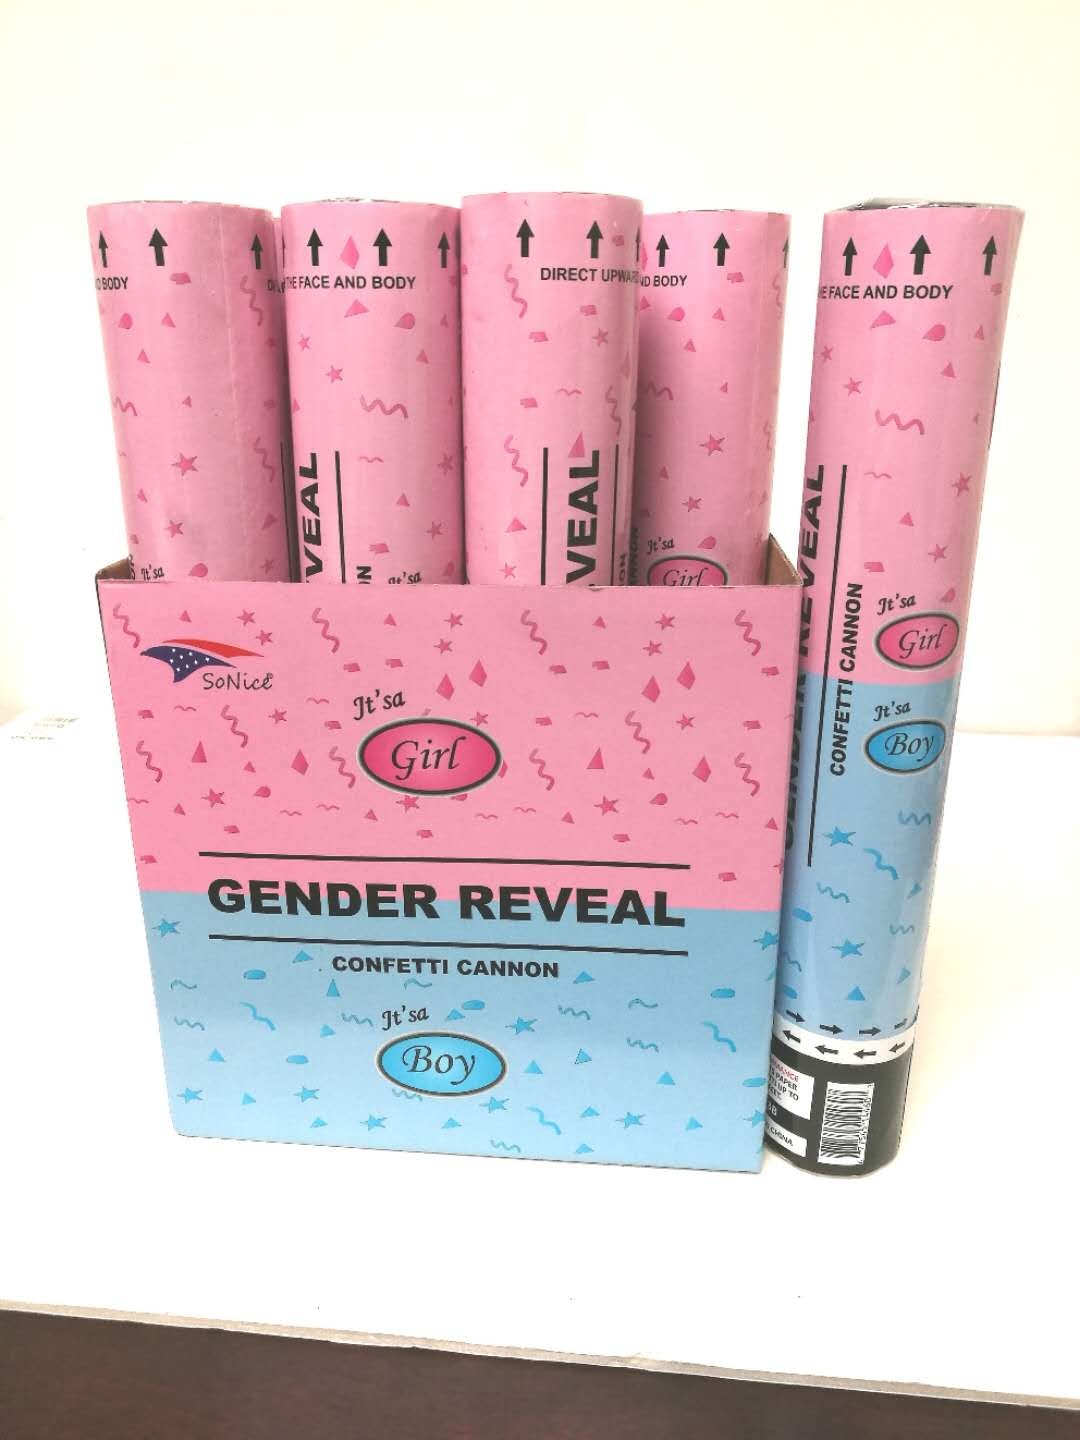 Gender reveal confetti cannon